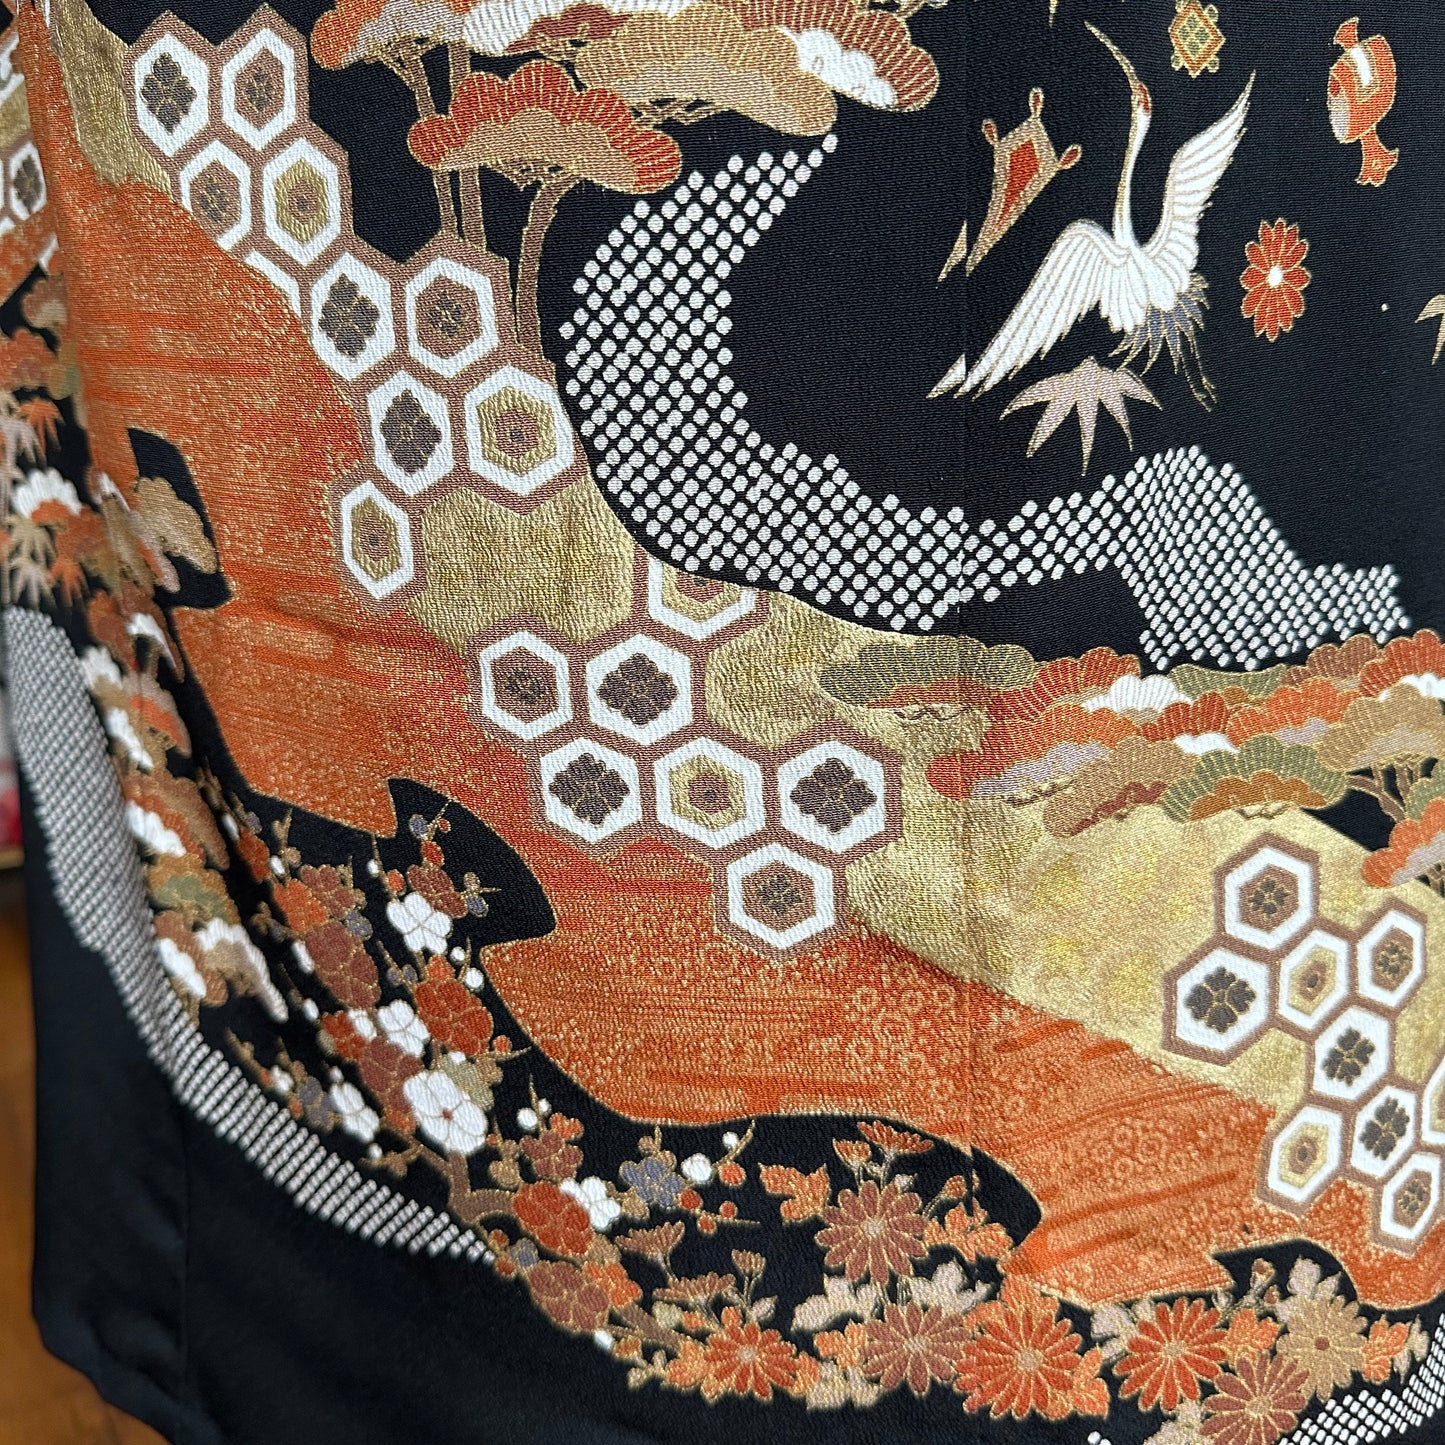 Kimono jupe en soie, Tomesode 黒留袖, fabriquée à la main, recyclée, Grues